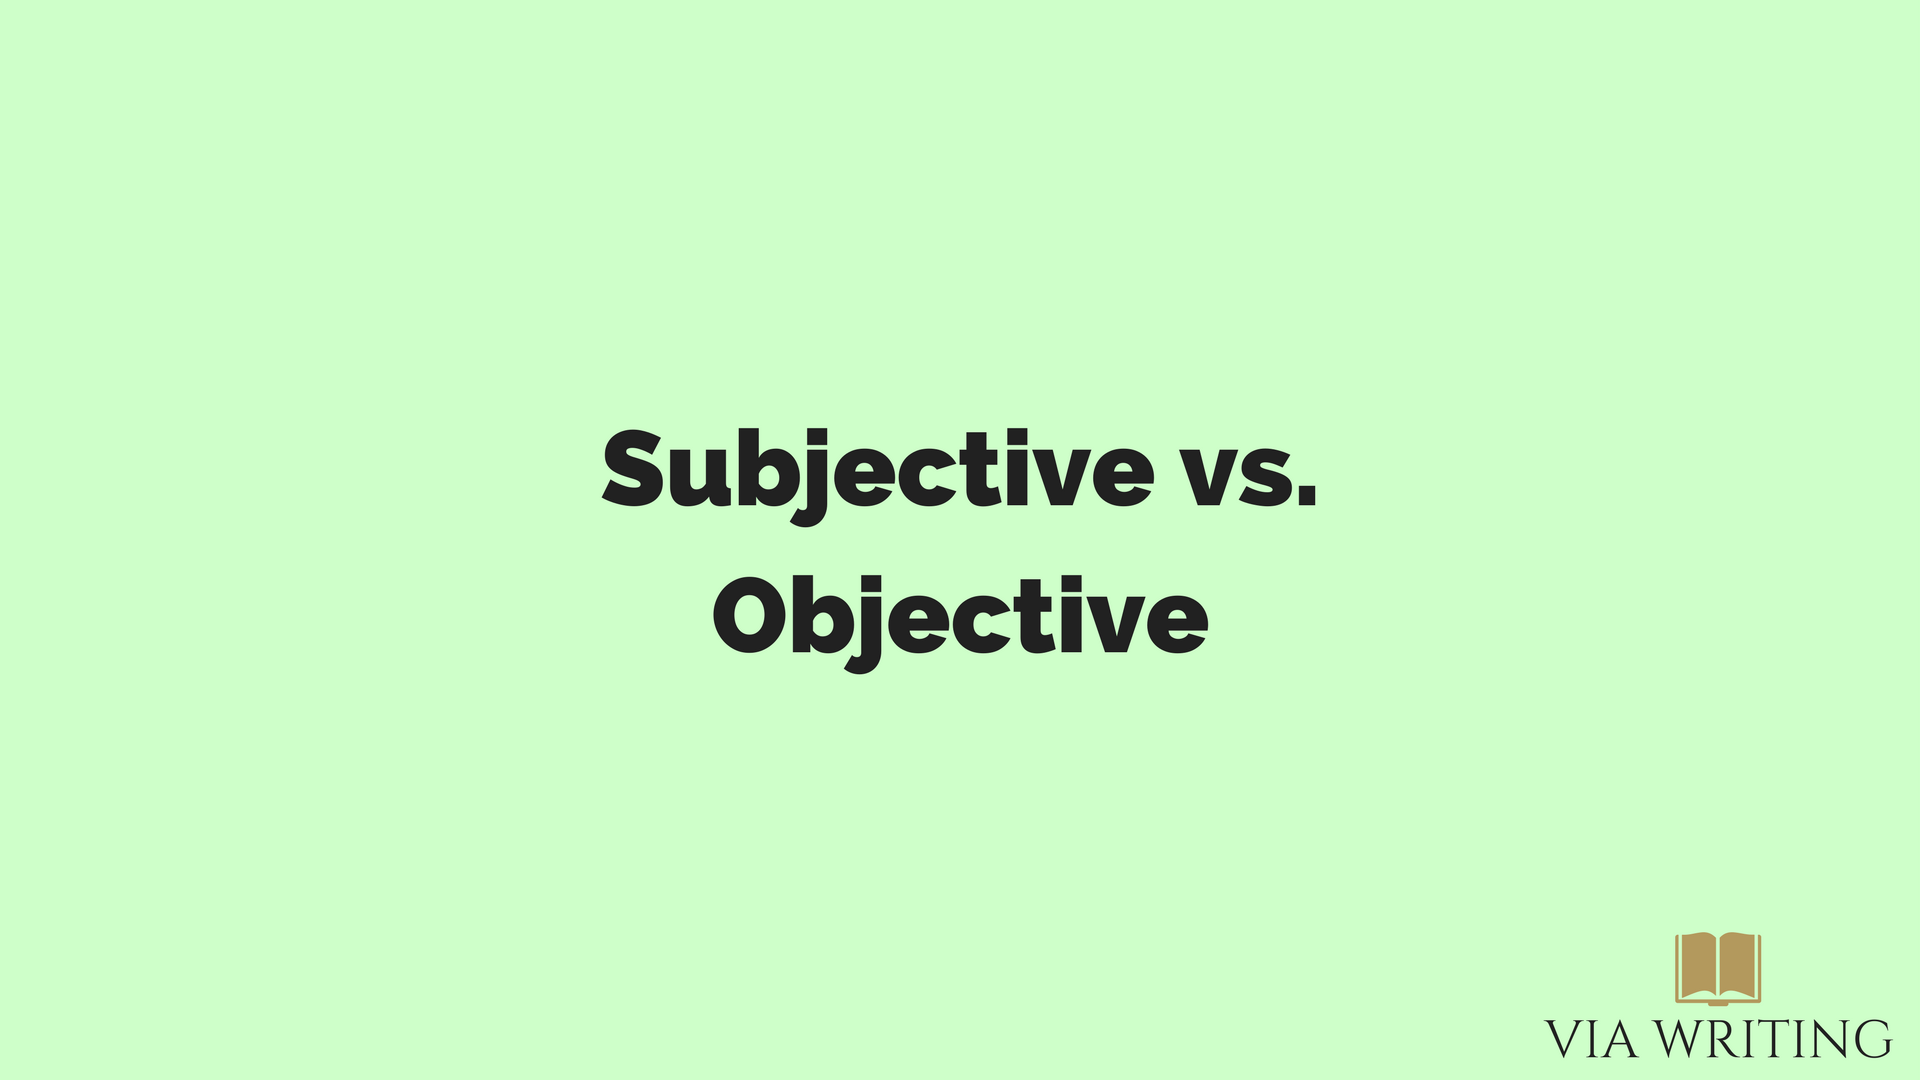 Subjective Vs Objective Via Writing